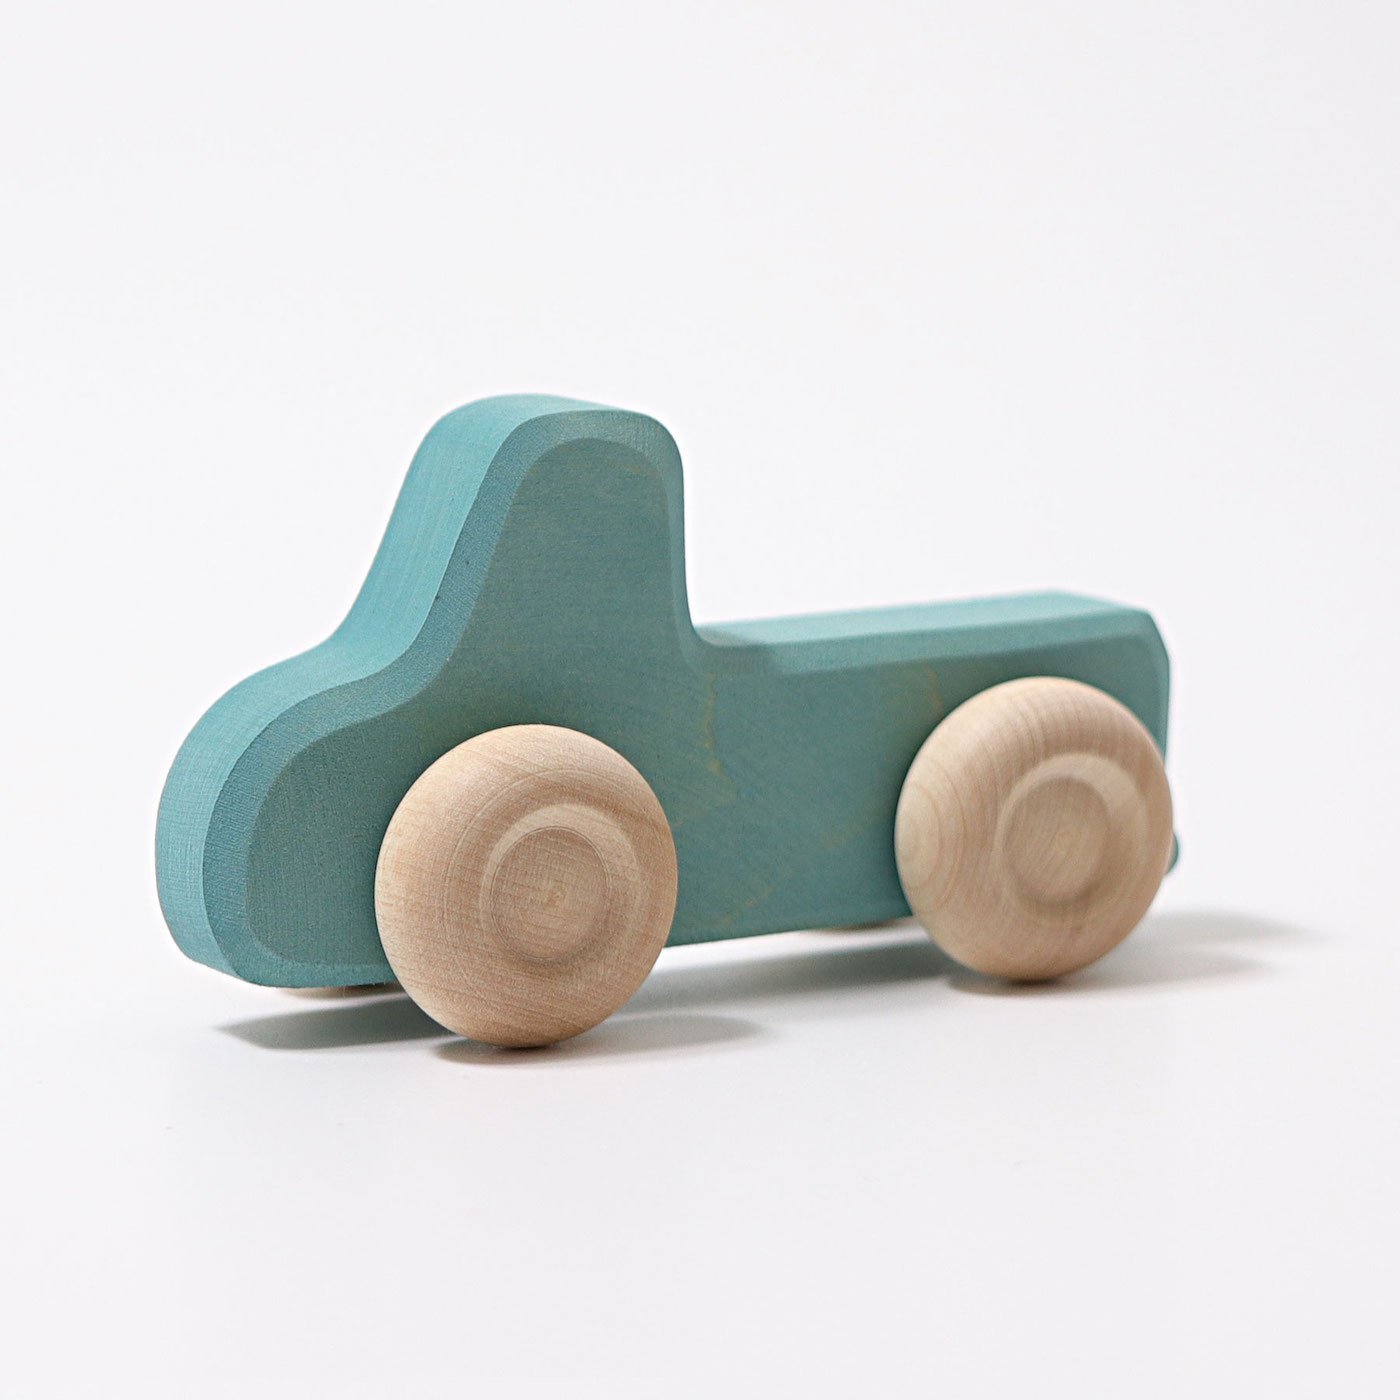 Grimm's Wooden Slimline Cars Set - Scandibørn